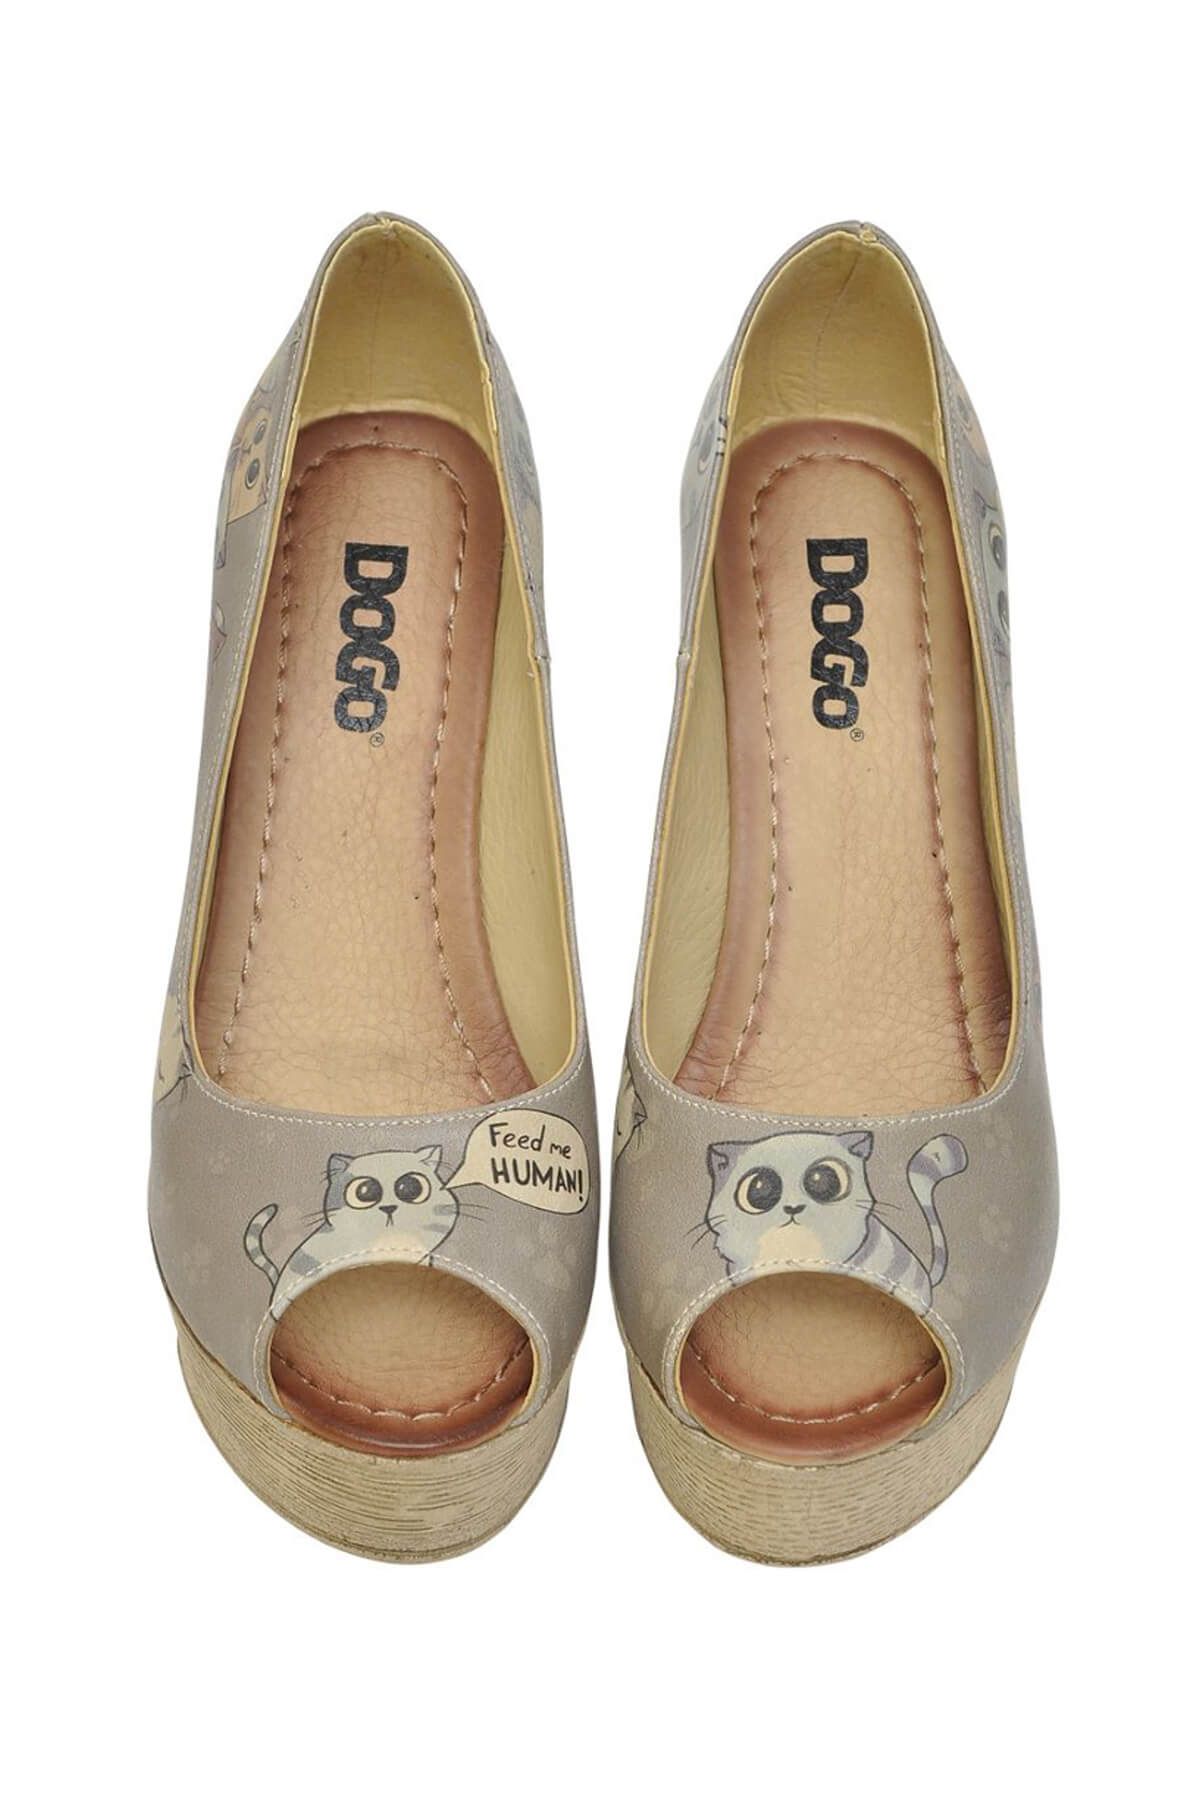 Dogo Kadın Vegan Deri Gri Dolgu Topuk Ayakkabı - Feed Me Human Tasarım